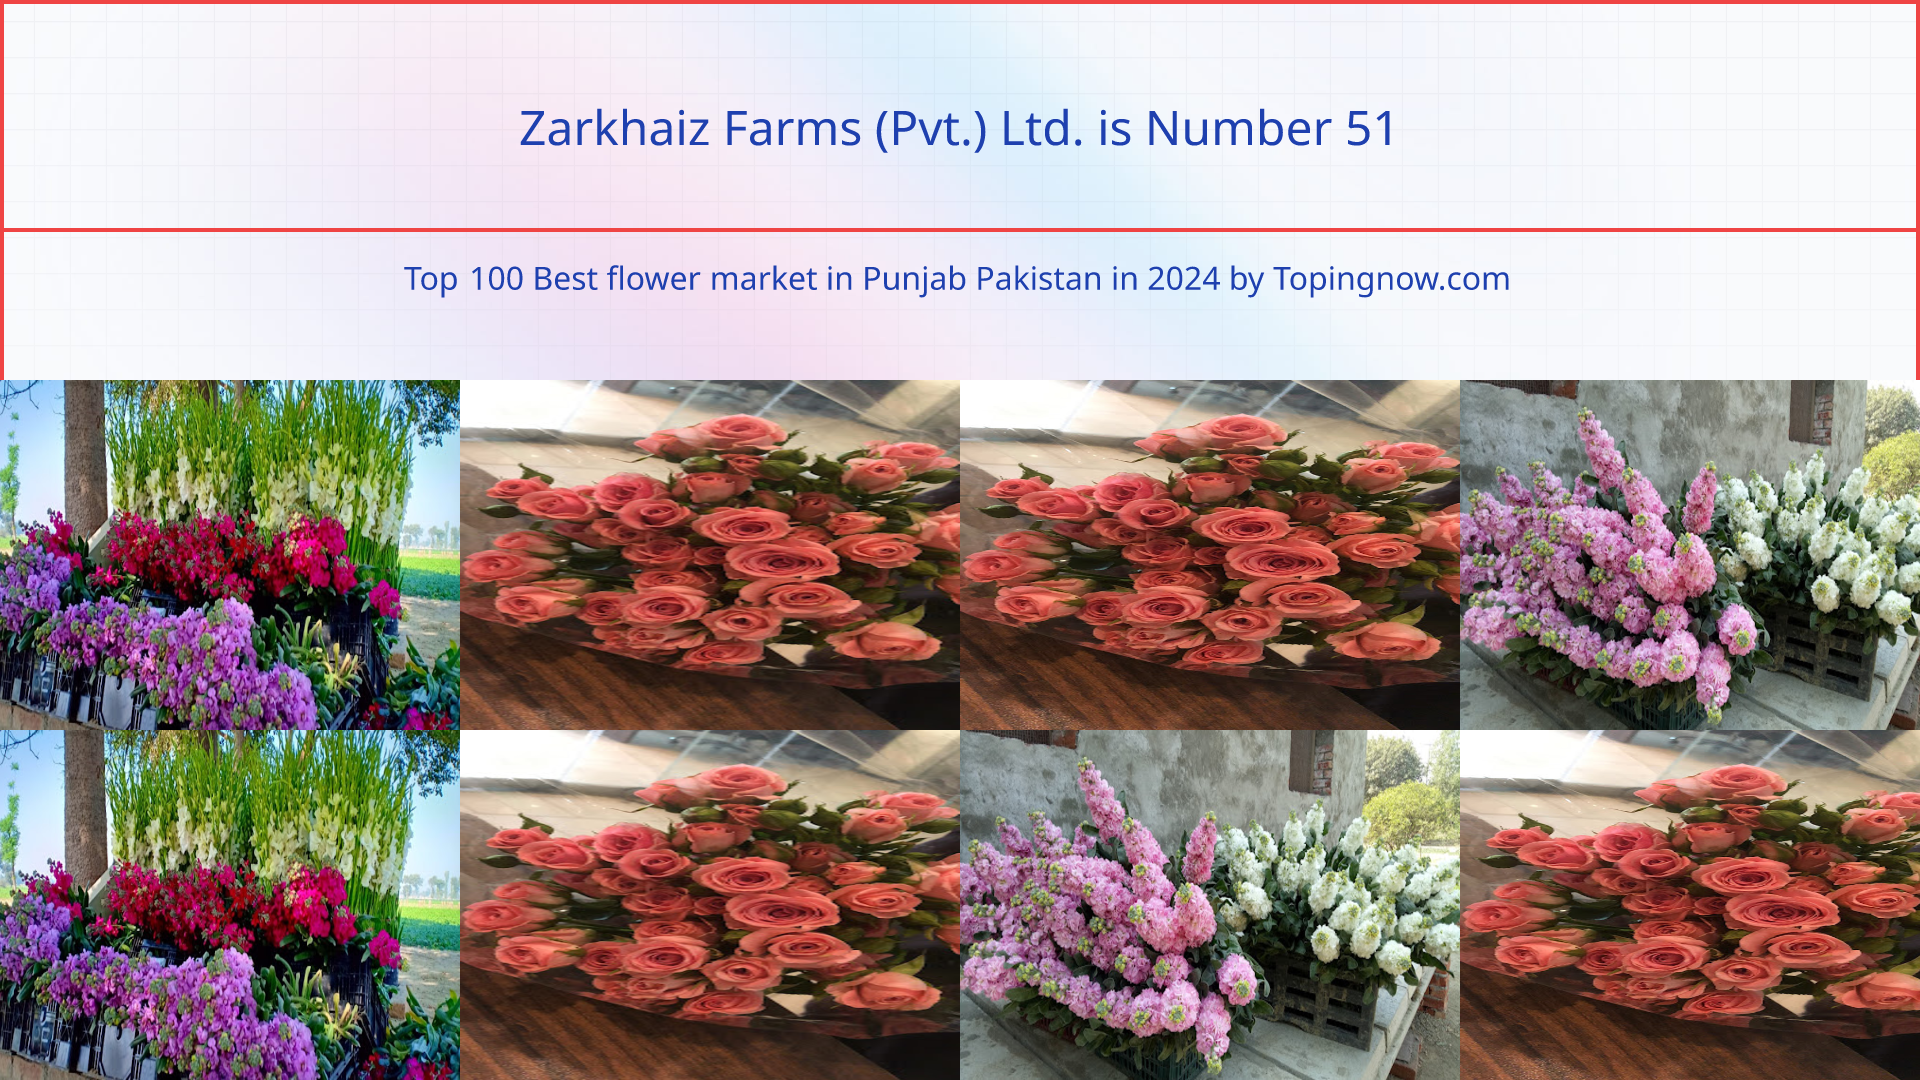 Zarkhaiz Farms (Pvt.) Ltd.: Top 100 Best flower market in Punjab Pakistan in 2024